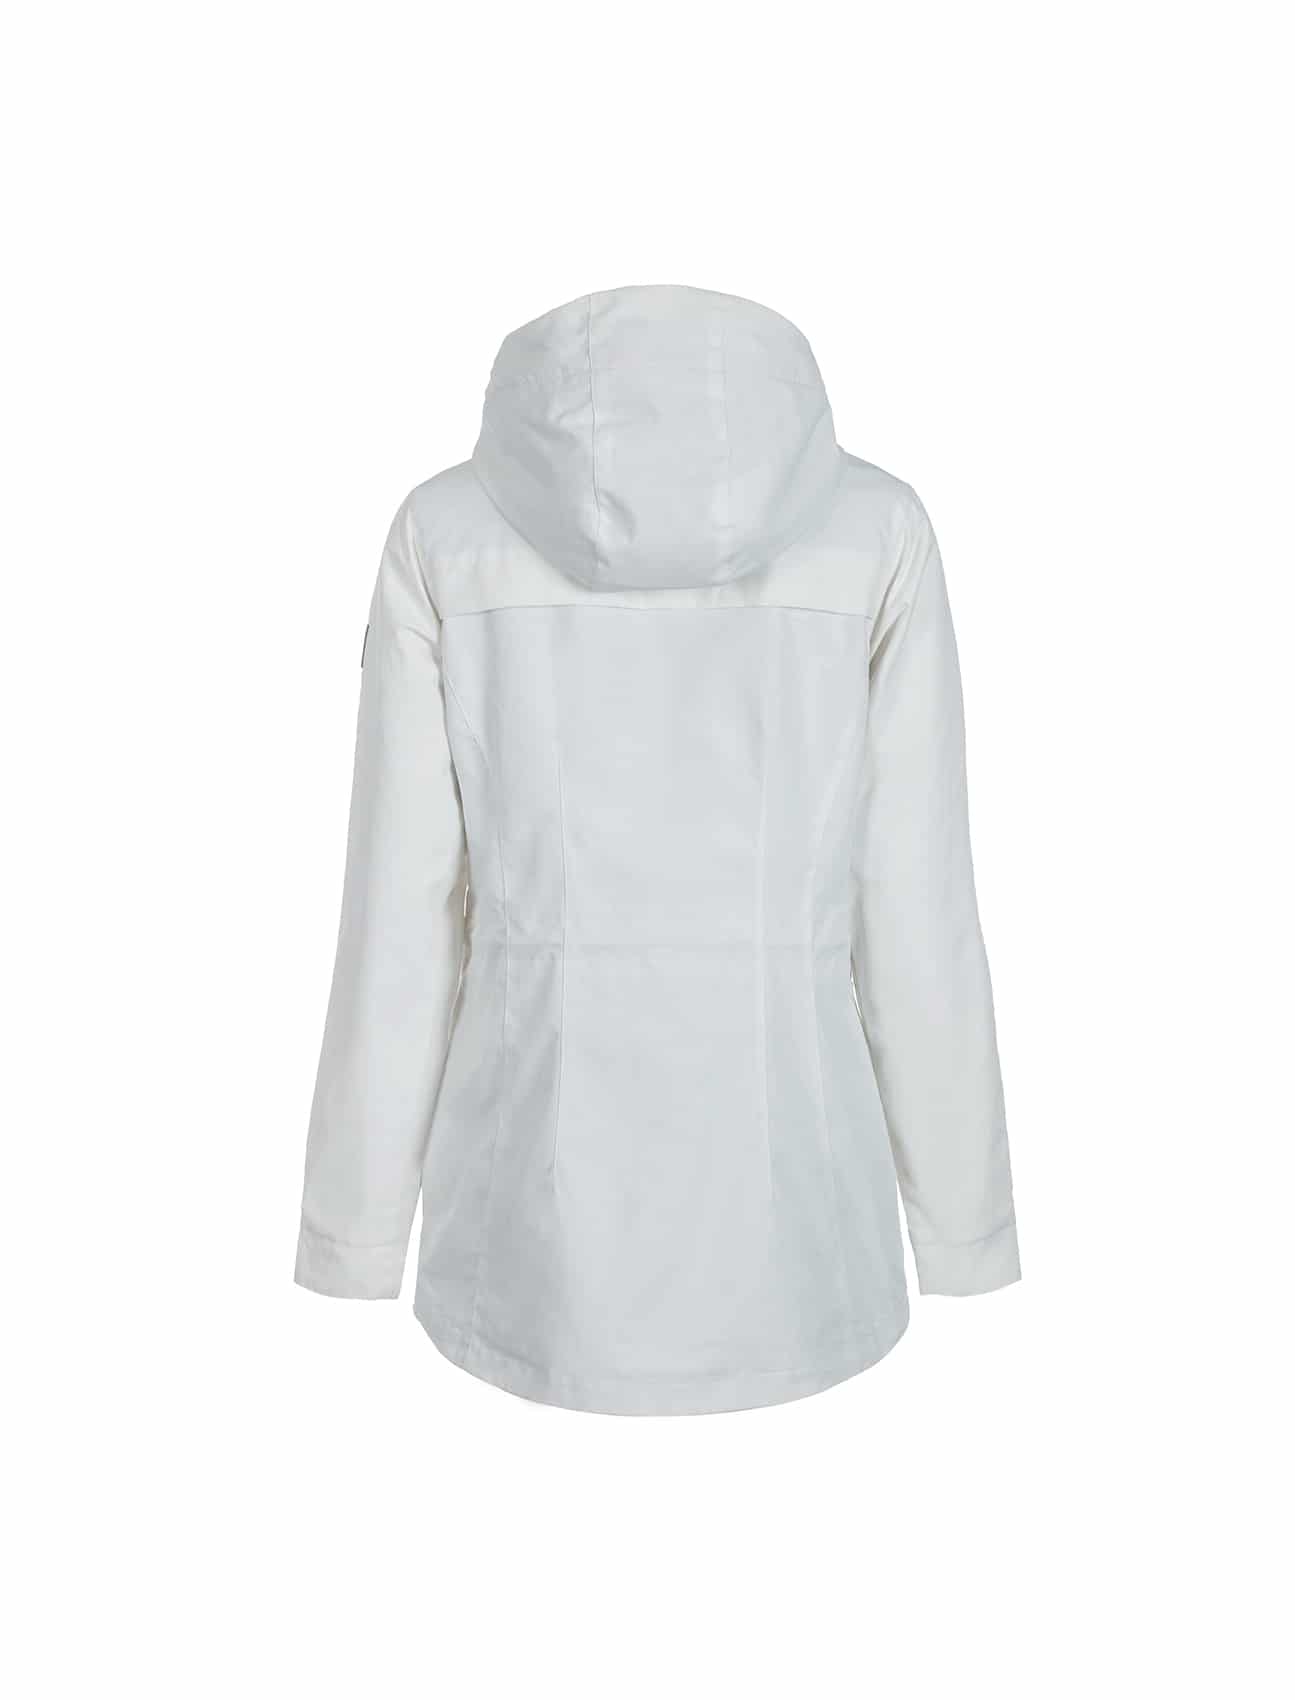 Buy Luoto Aava Jacket White - Scandinavian Fashion Store